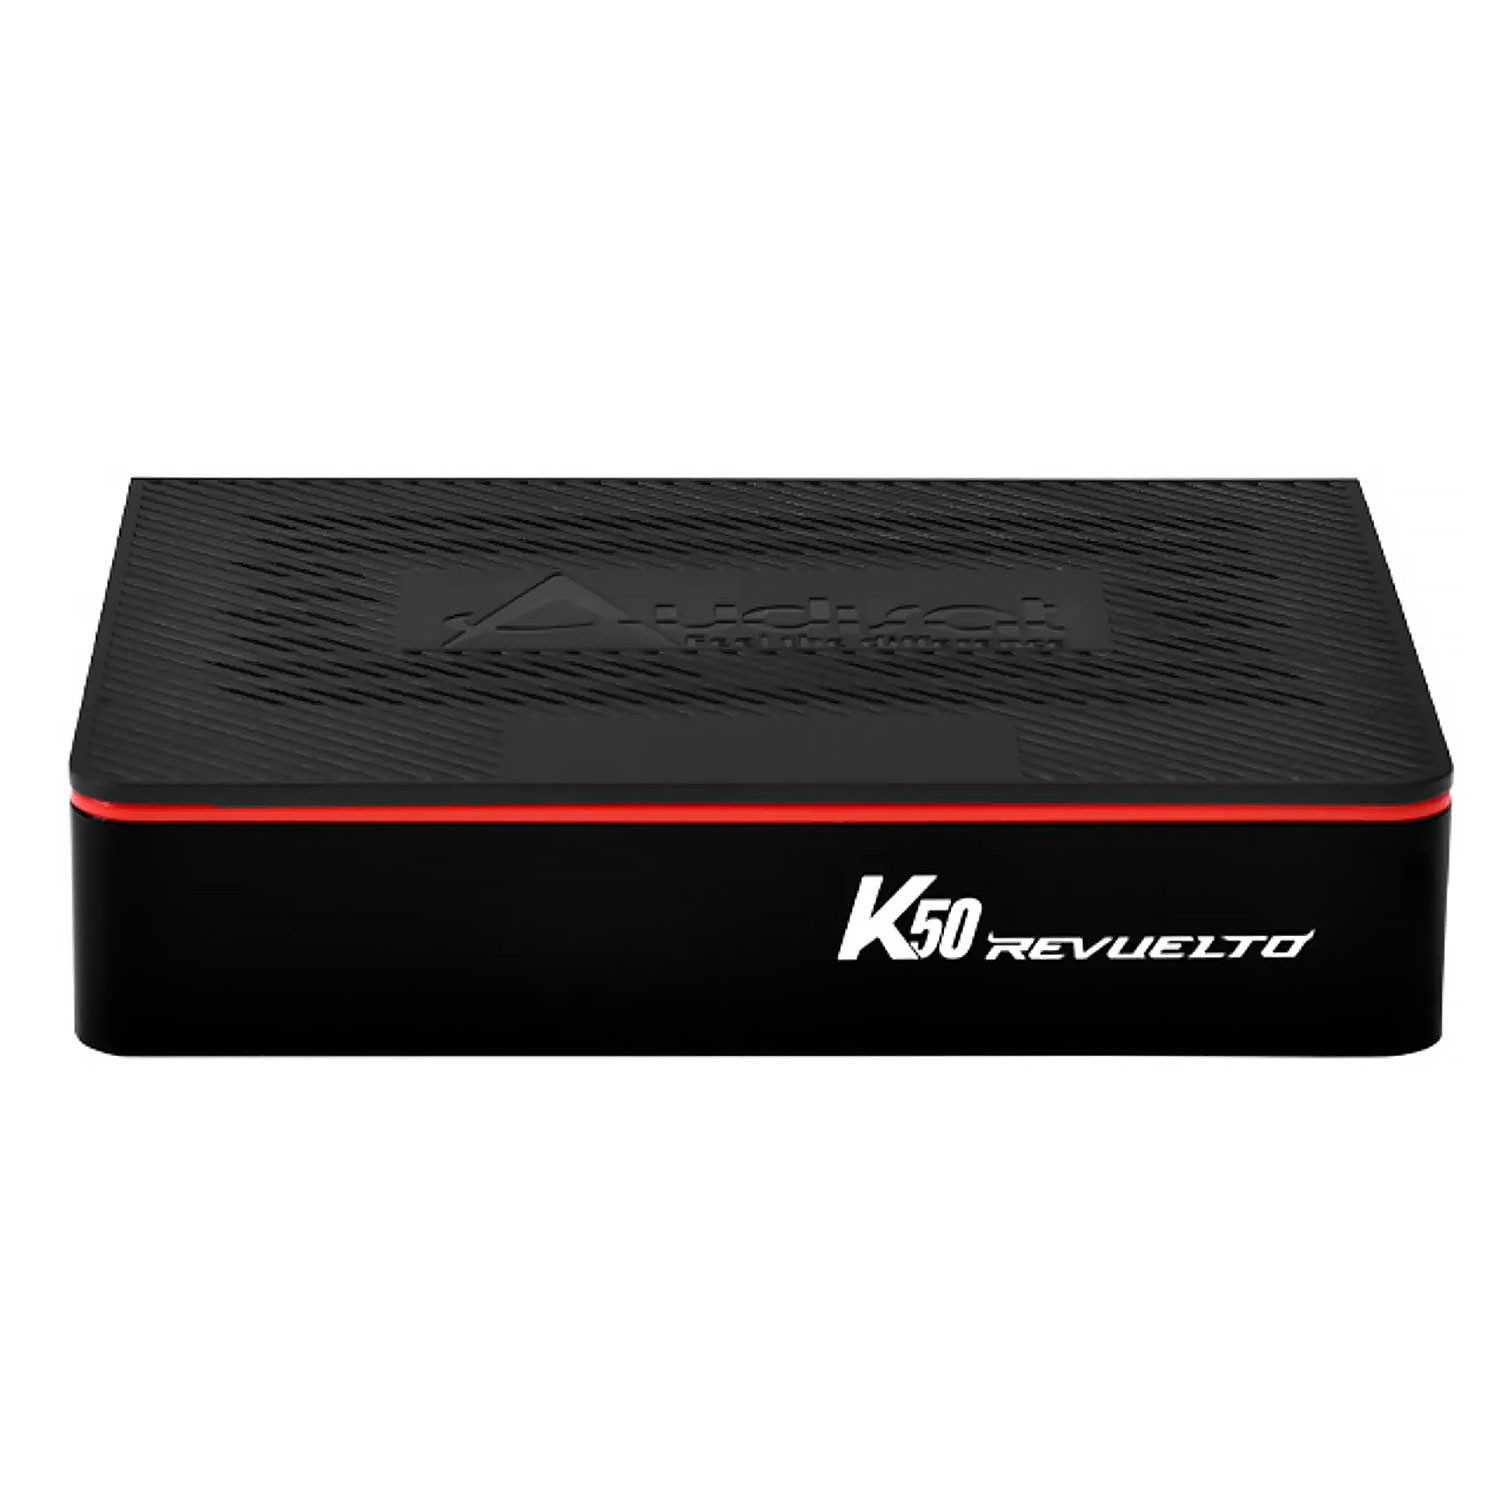 Receptor Audisat K50 Revuelto Full HD WiFi - Preto